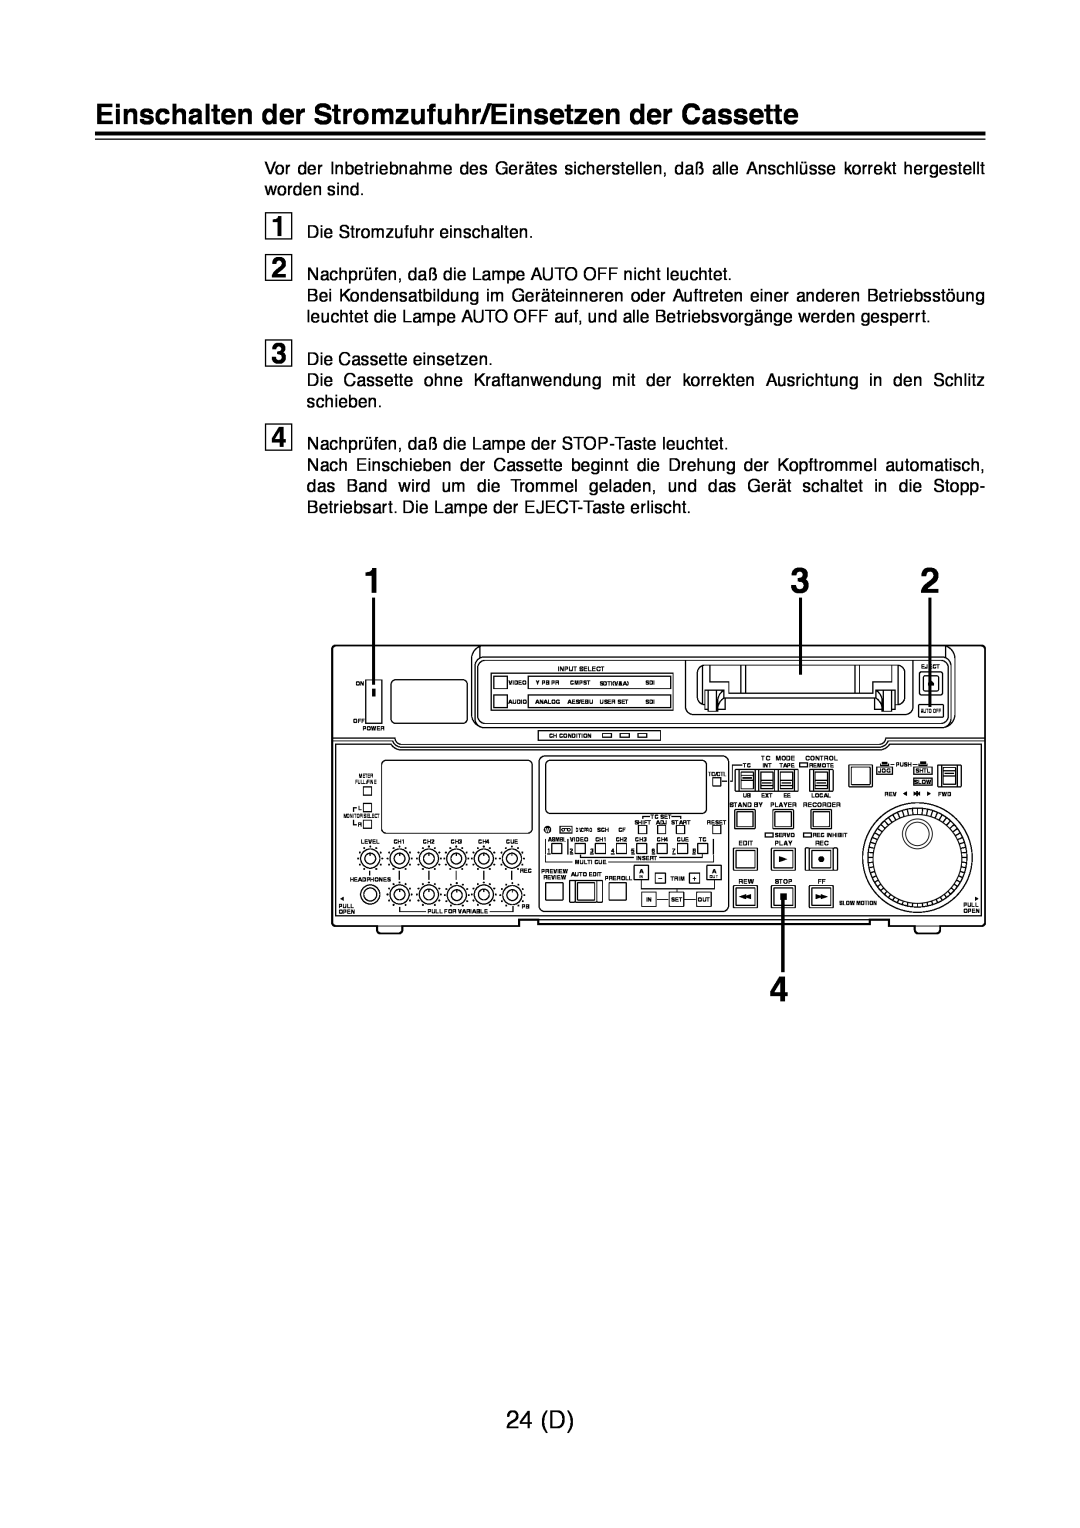 Panasonic AJ-D960 operating instructions Einschalten der Stromzufuhr/Einsetzen der Cassette, 24 D 